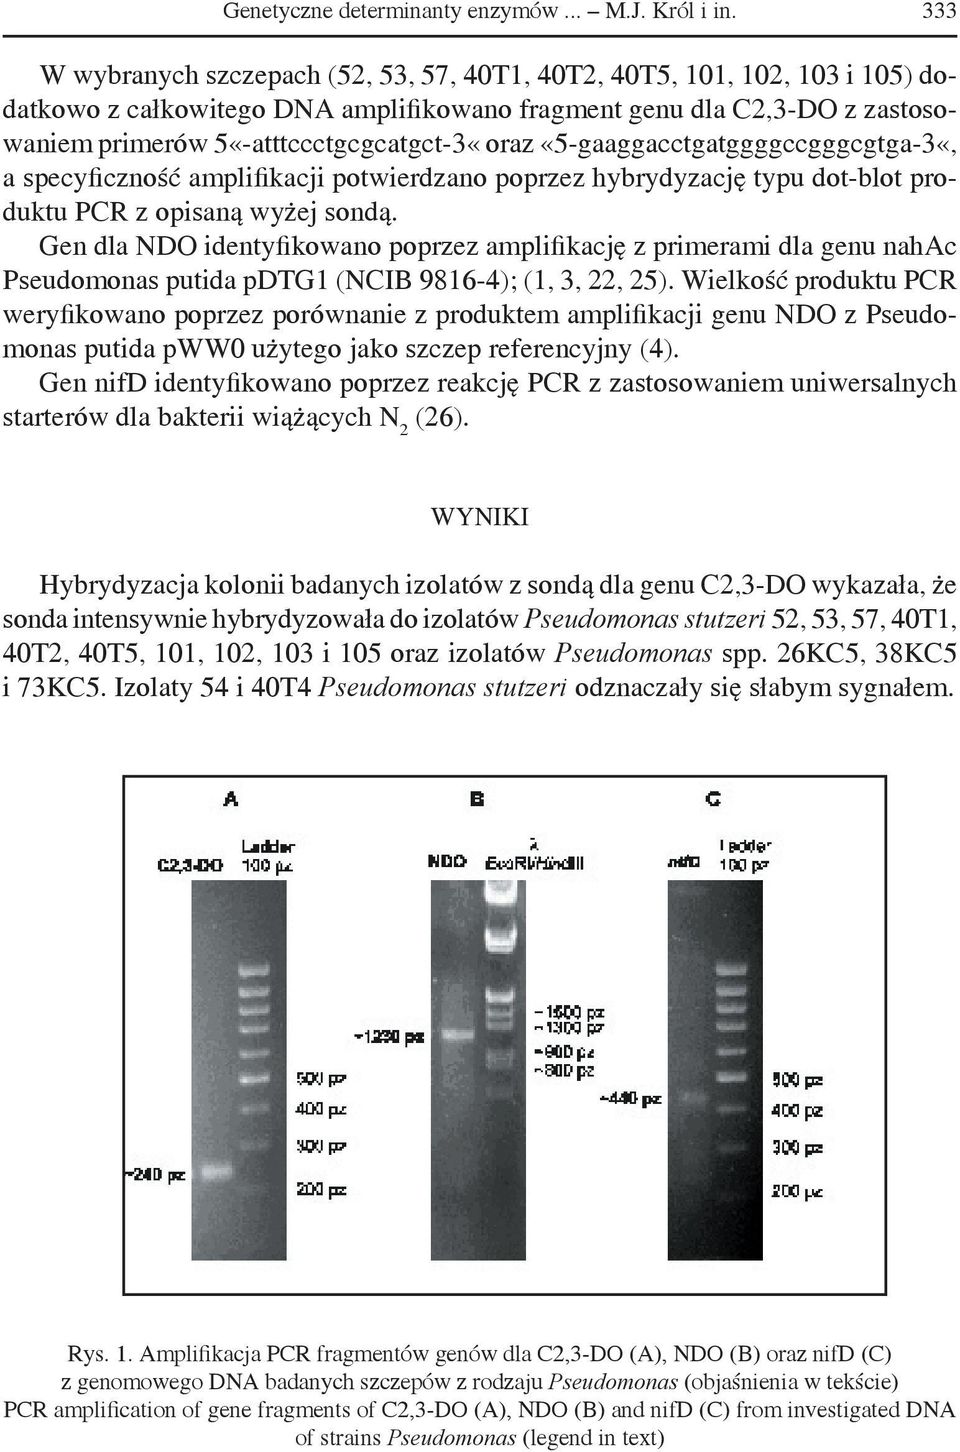 «5-gaaggacctgatggggccgggcgtga-3«, a specyficzność amplifikacji potwierdzano poprzez hybrydyzację typu dot-blot produktu PCR z opisaną wyżej sondą.